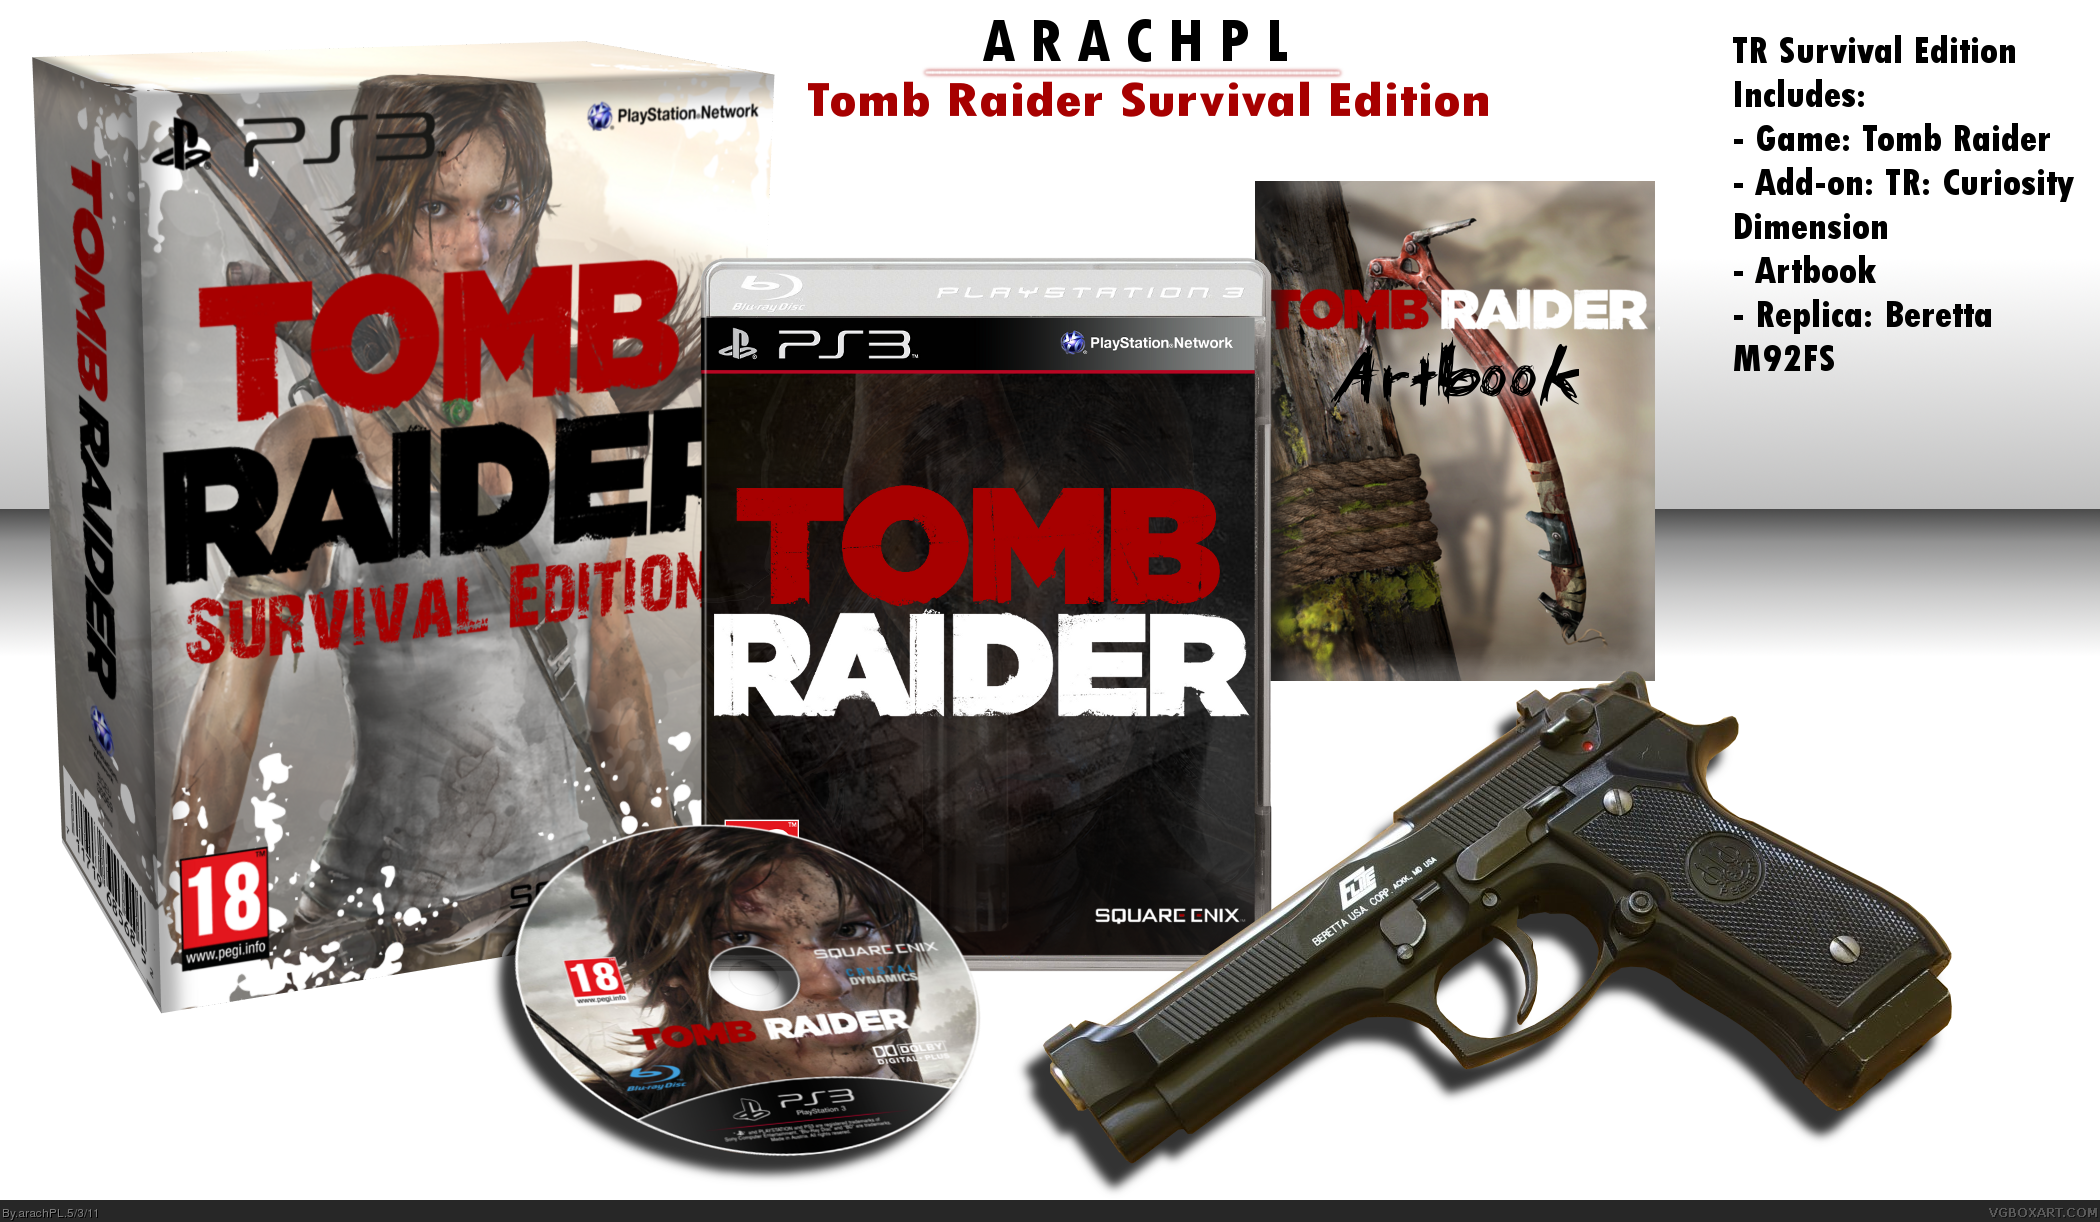 Tomb Raider Survival Edition box cover